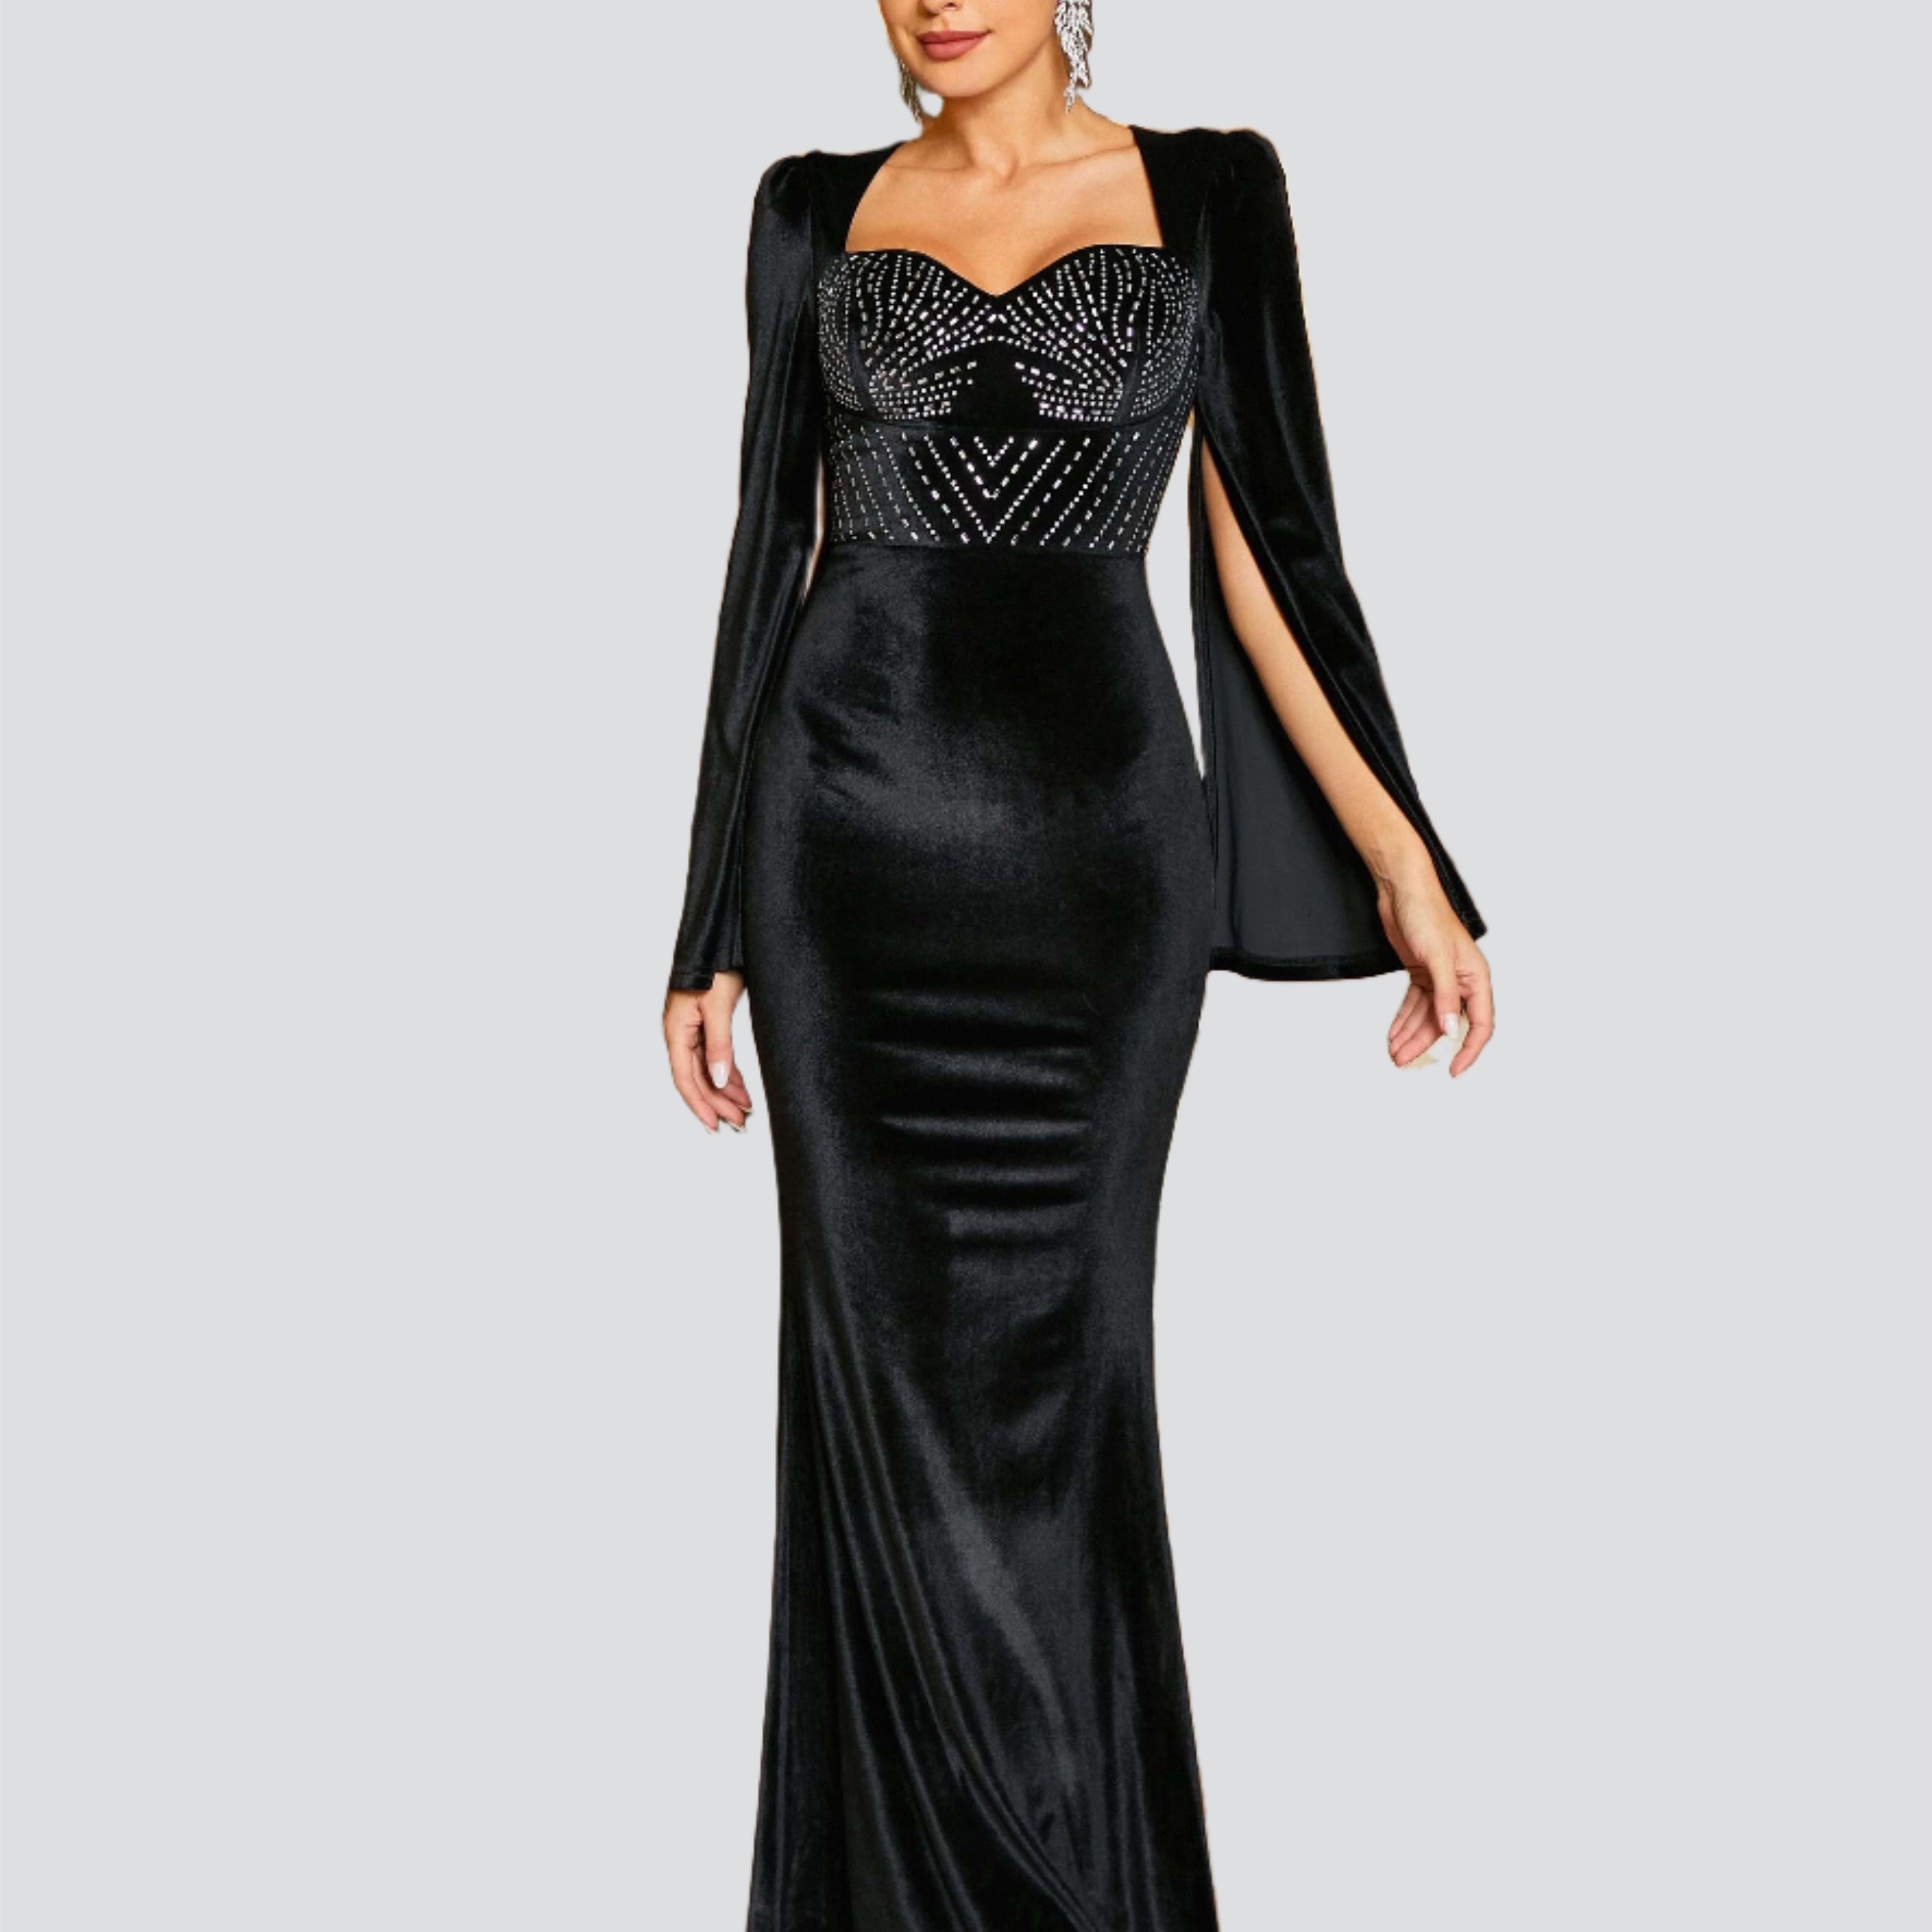 Velvet Mermaid Elegant Prom Dress RJ11037